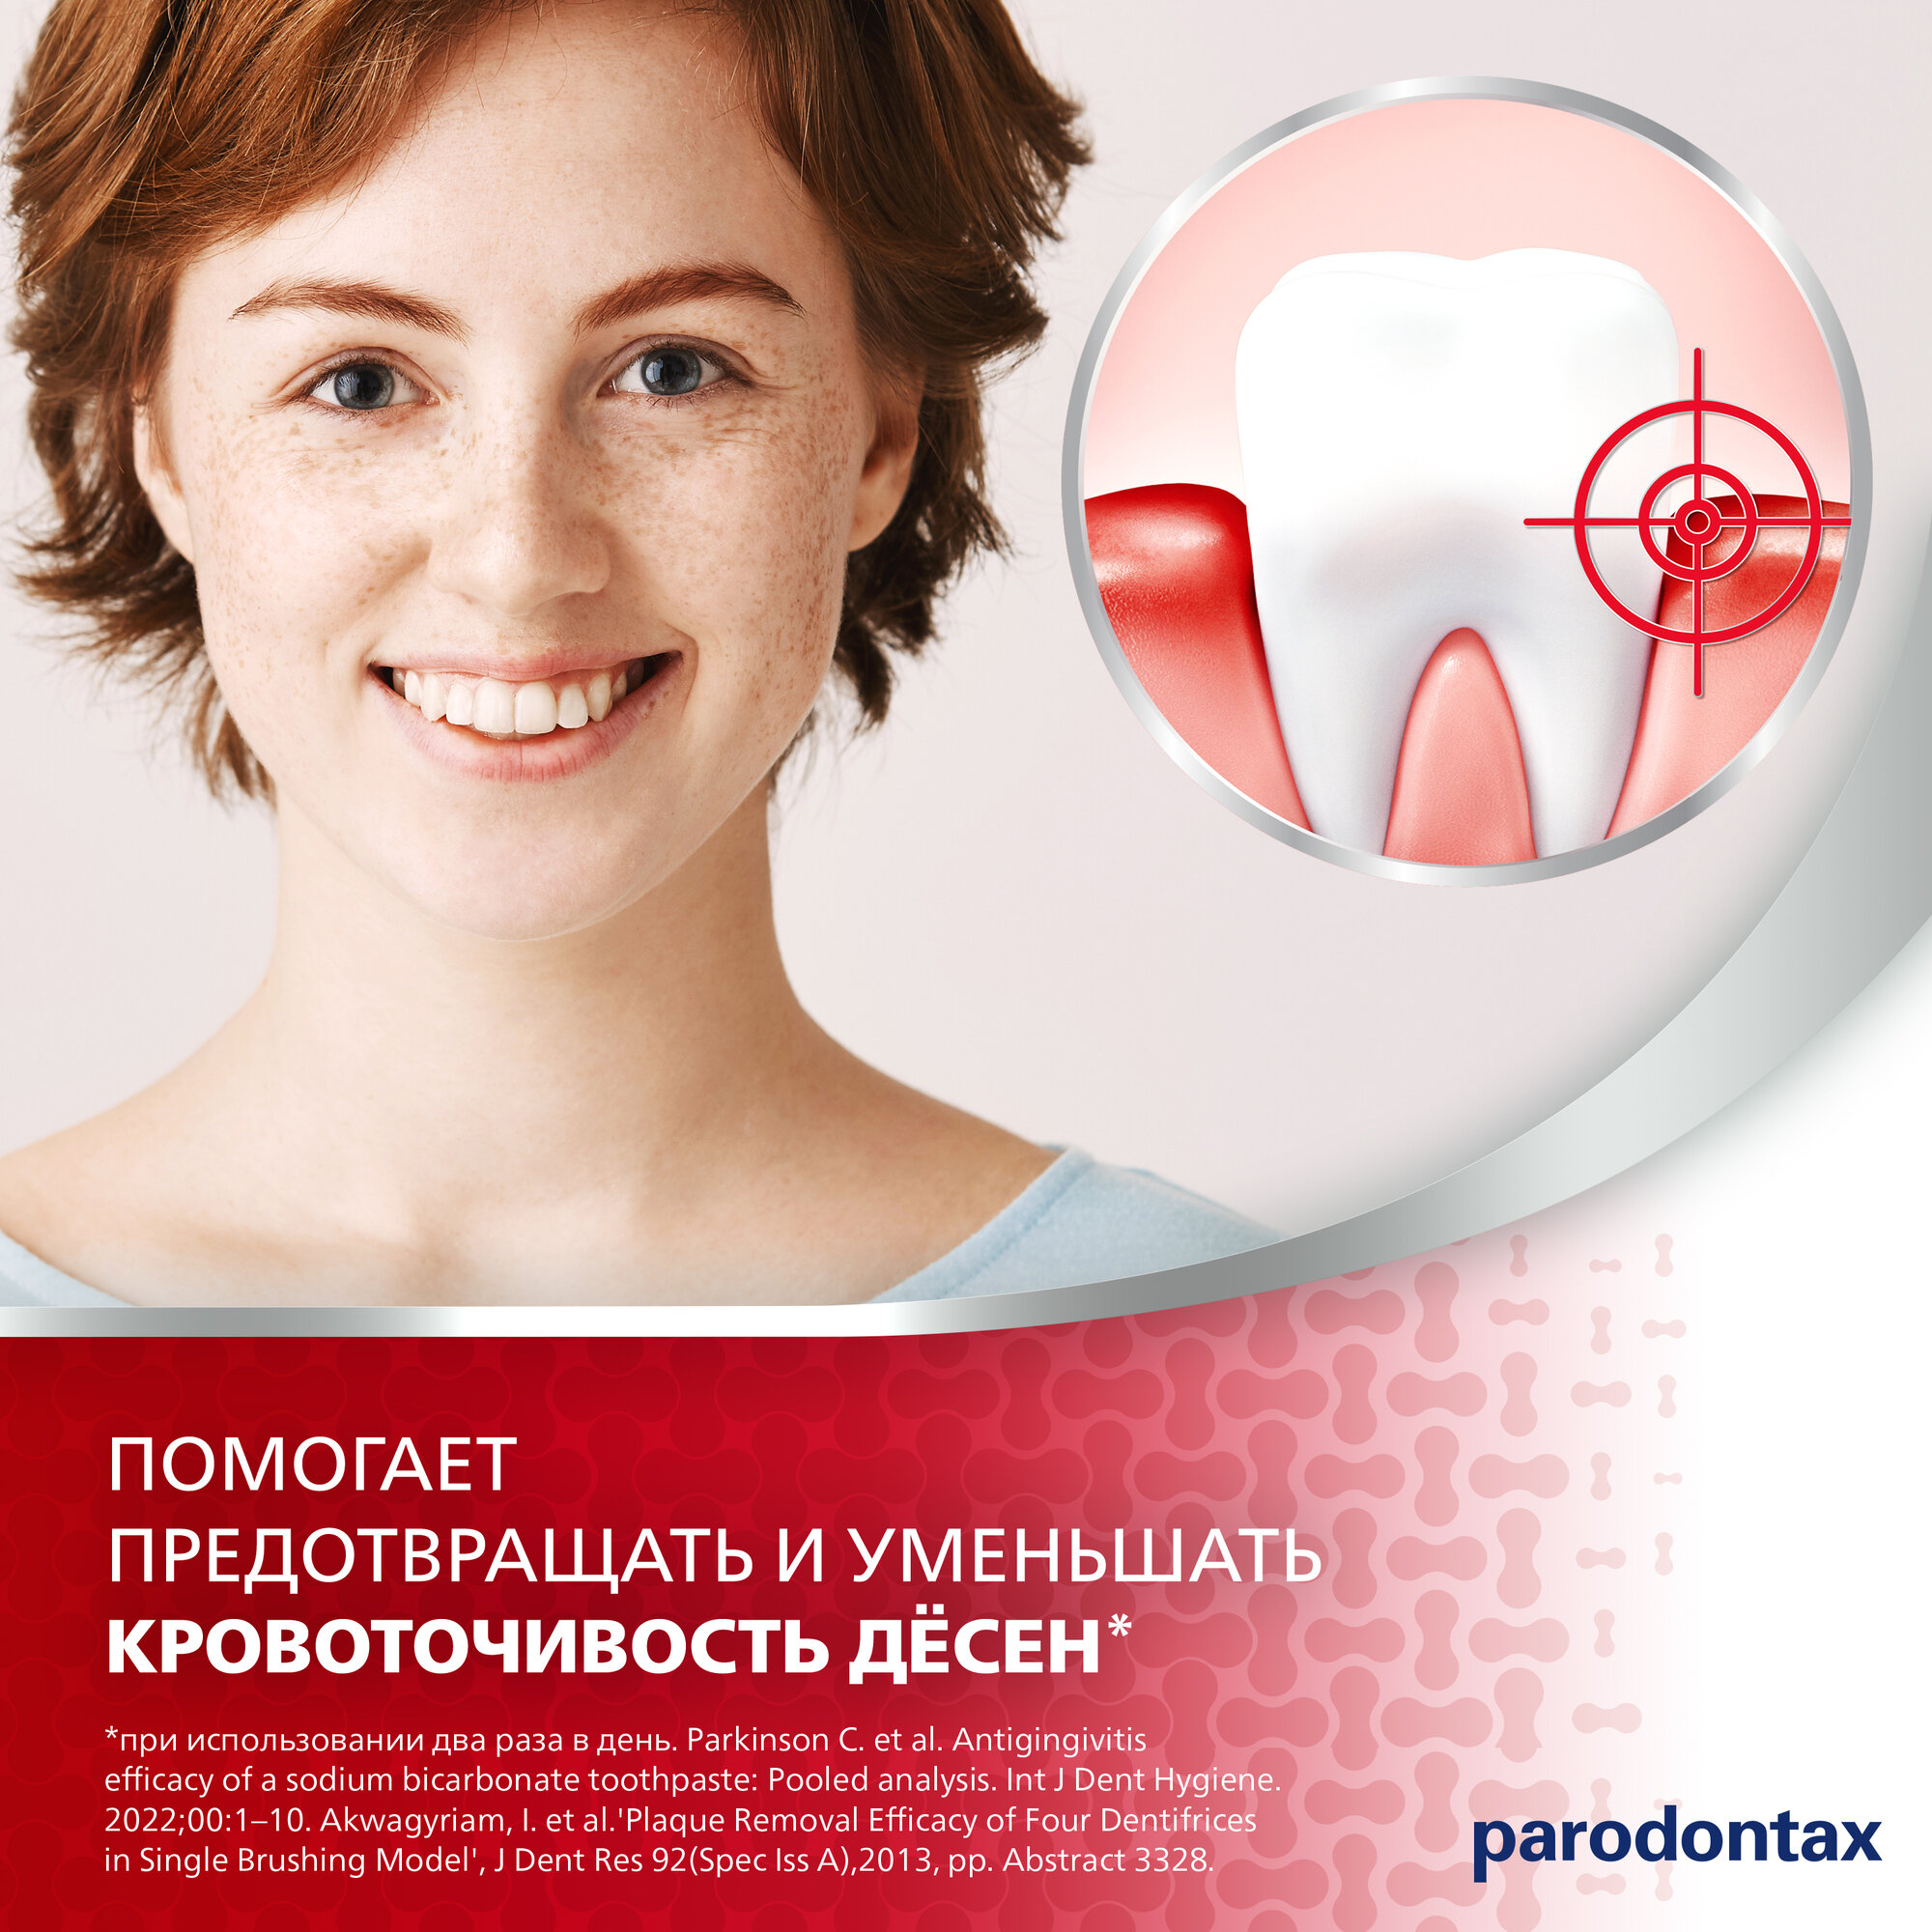 Зубная паста parodontax с Фтором от воспаления и кровоточивости десен для поддержания здоровья десен и укрепления зубов, 75 мл